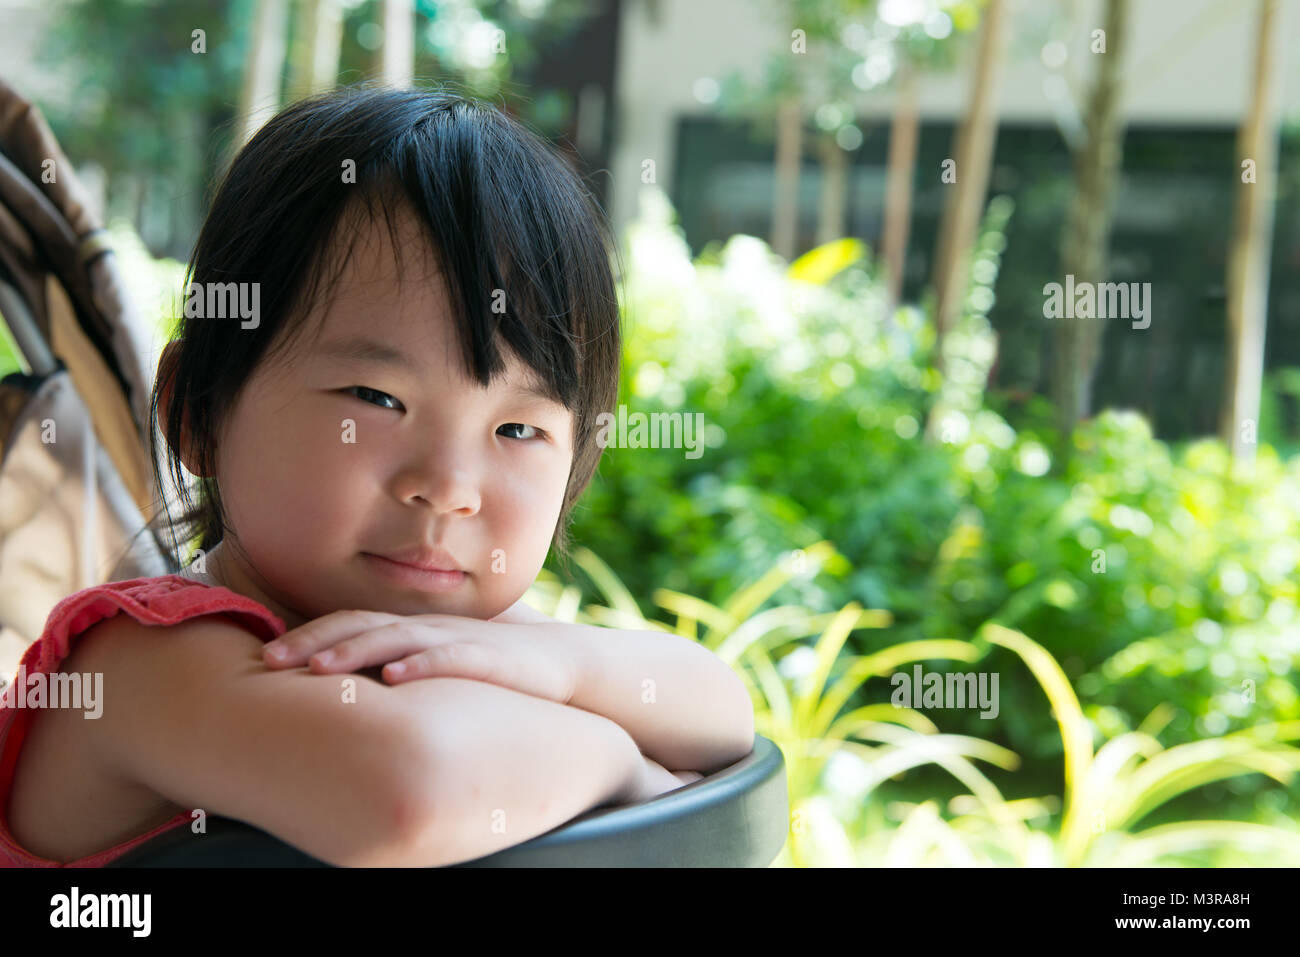 Asiatische kind Mädchen im Kinderwagen Stockfoto